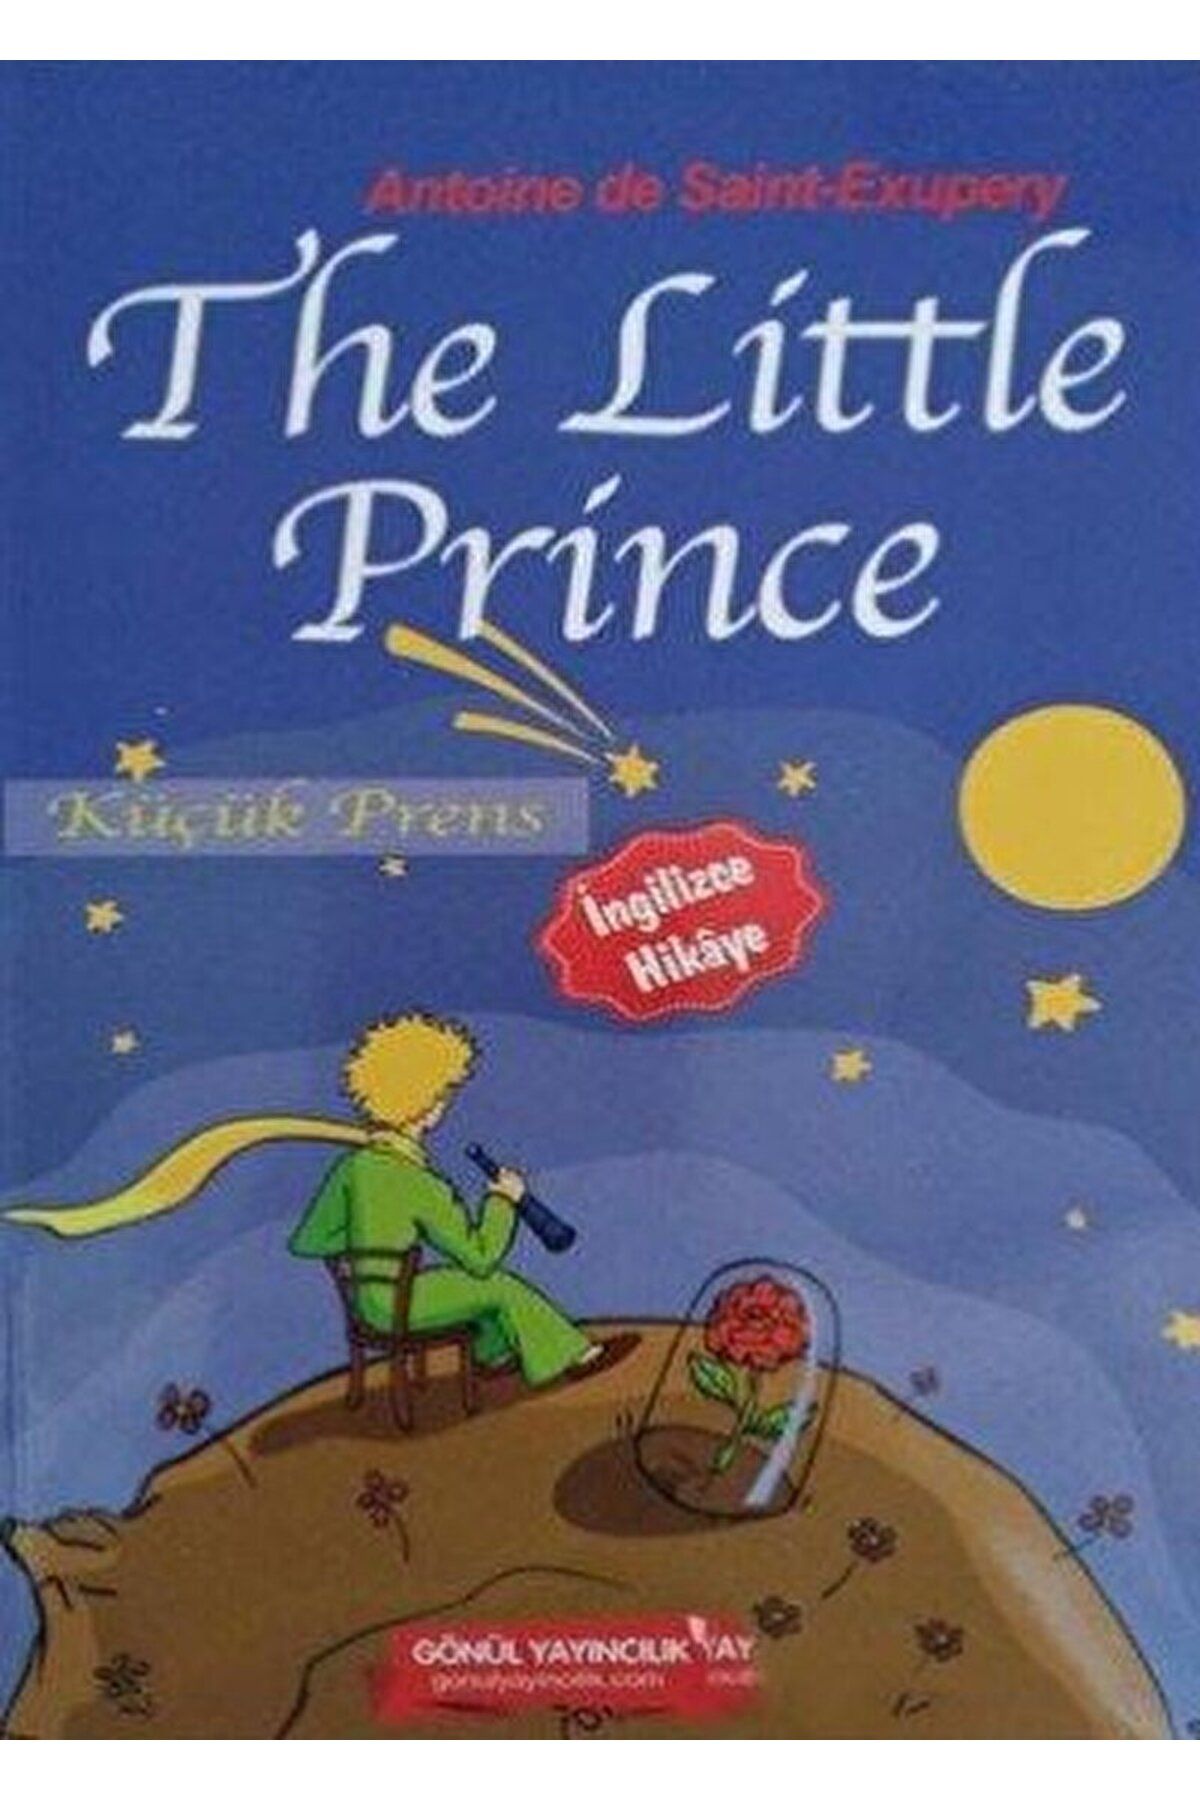 GÖNÜL YAYINCILIK The Little Prince / Antoine de Saint-Exupery / Gönül Yayıncılık / 9786054784844